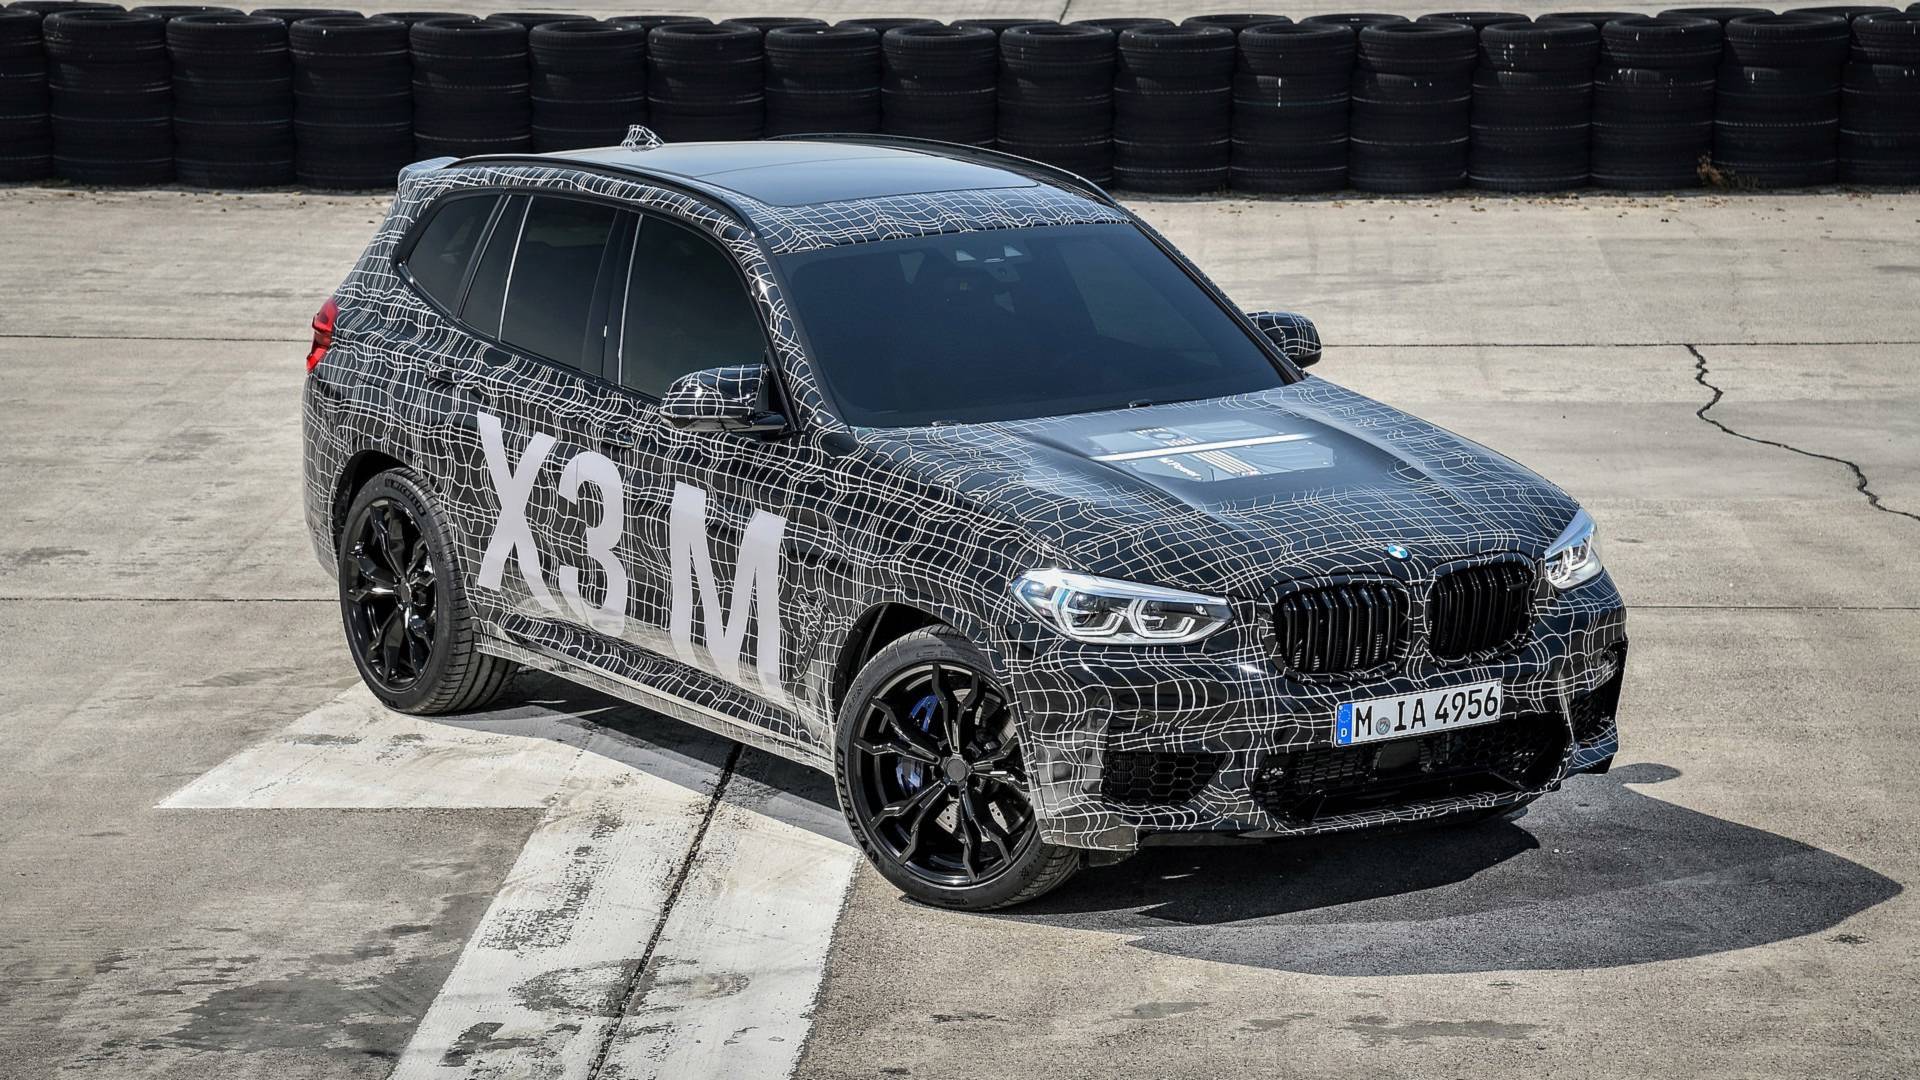 Ya casi están aquí: nuevos BMW X3 M y X4 M, imágenes oficiales